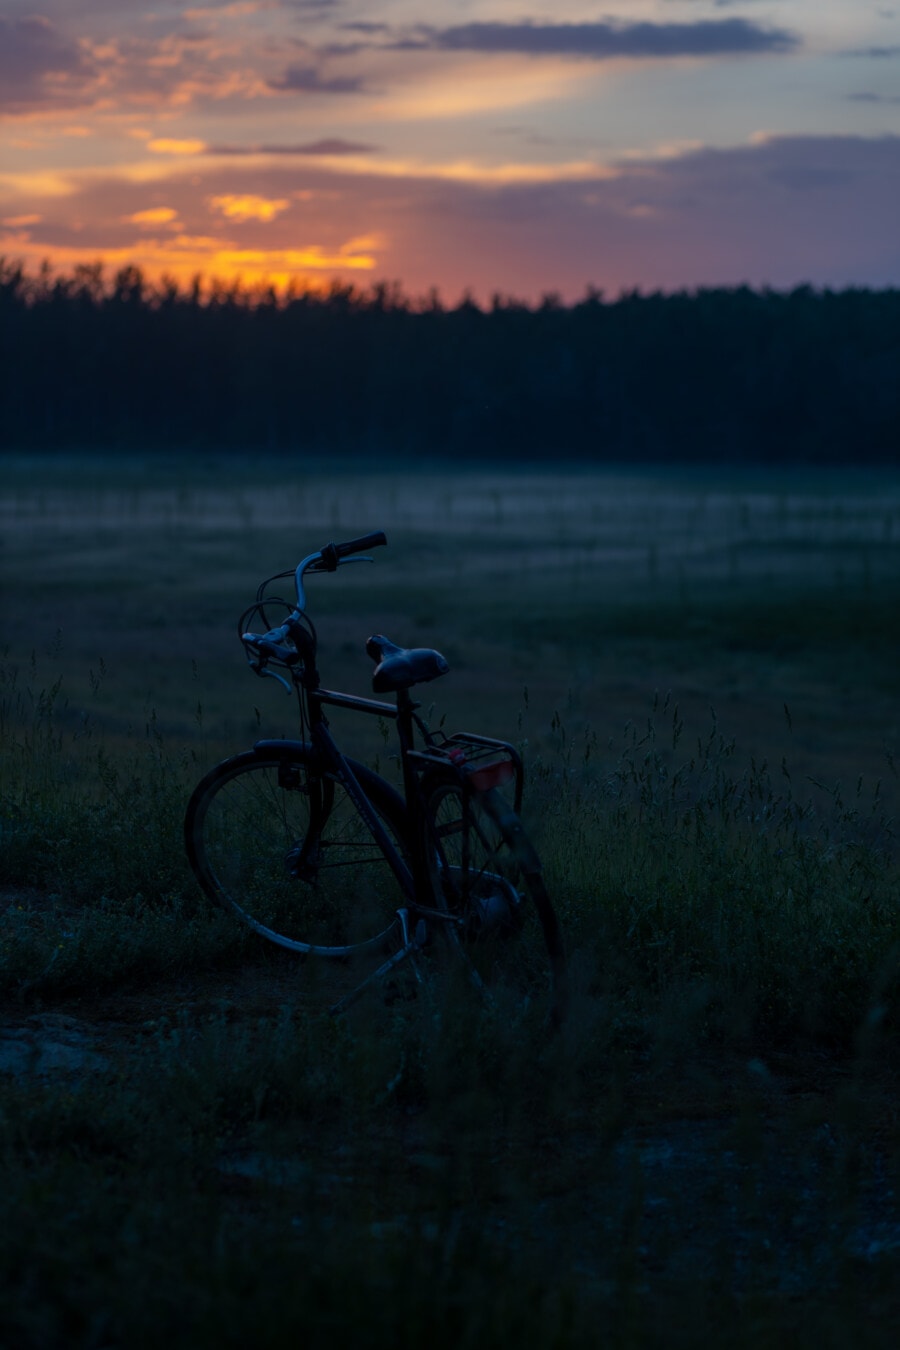 lever du soleil, silhouette, ombre, vélo, matin, brumeux, campagne, roue, aube, véhicule